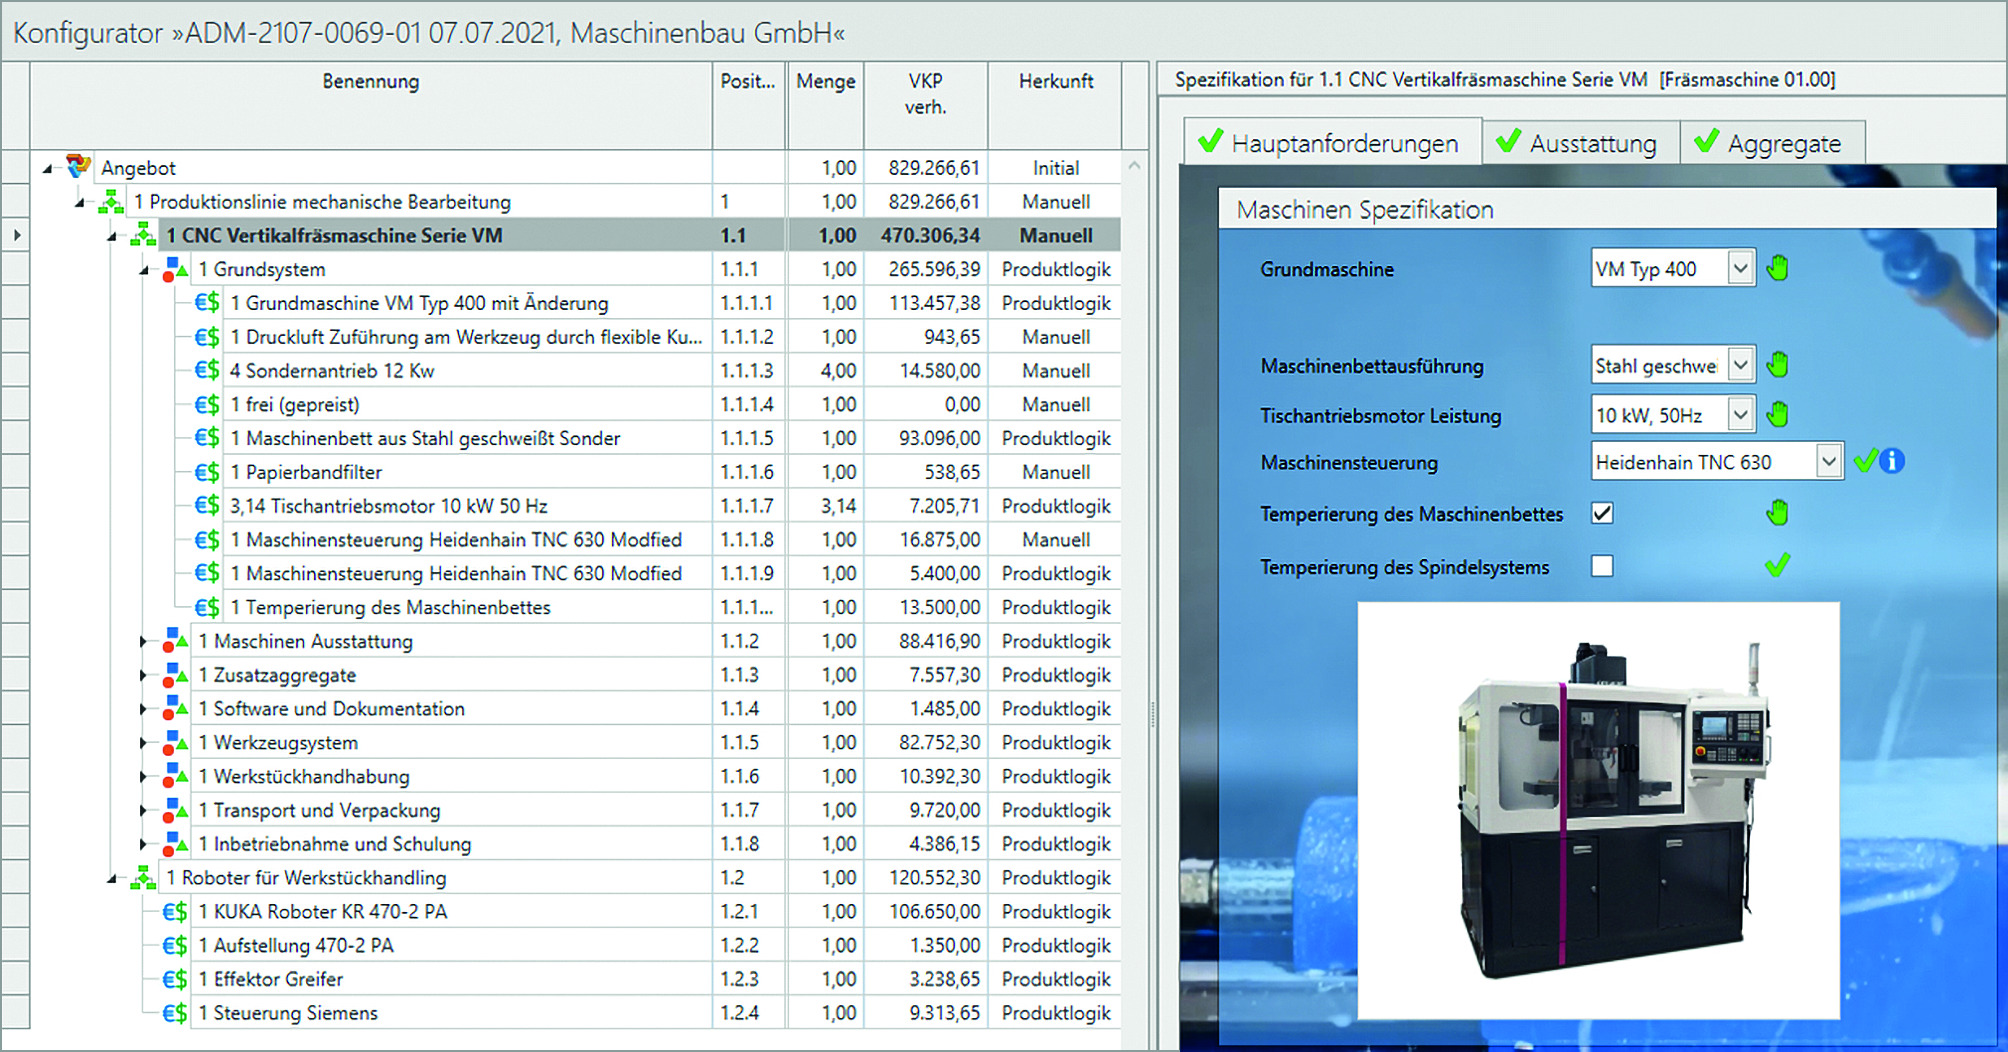 Beide Screenshots zeigen ein Werkzeugmaschinen-Produktspektrum. Das aufgeräumte Web Interface (links) richtet sich eher an Sales-orientierte Nutzer, während die rechte Desktop-Oberfläche mehr Funktionen für Konfiguration und Kalkulation bündelt. (Bild: EAS Engineering Automation Systems GmbH)